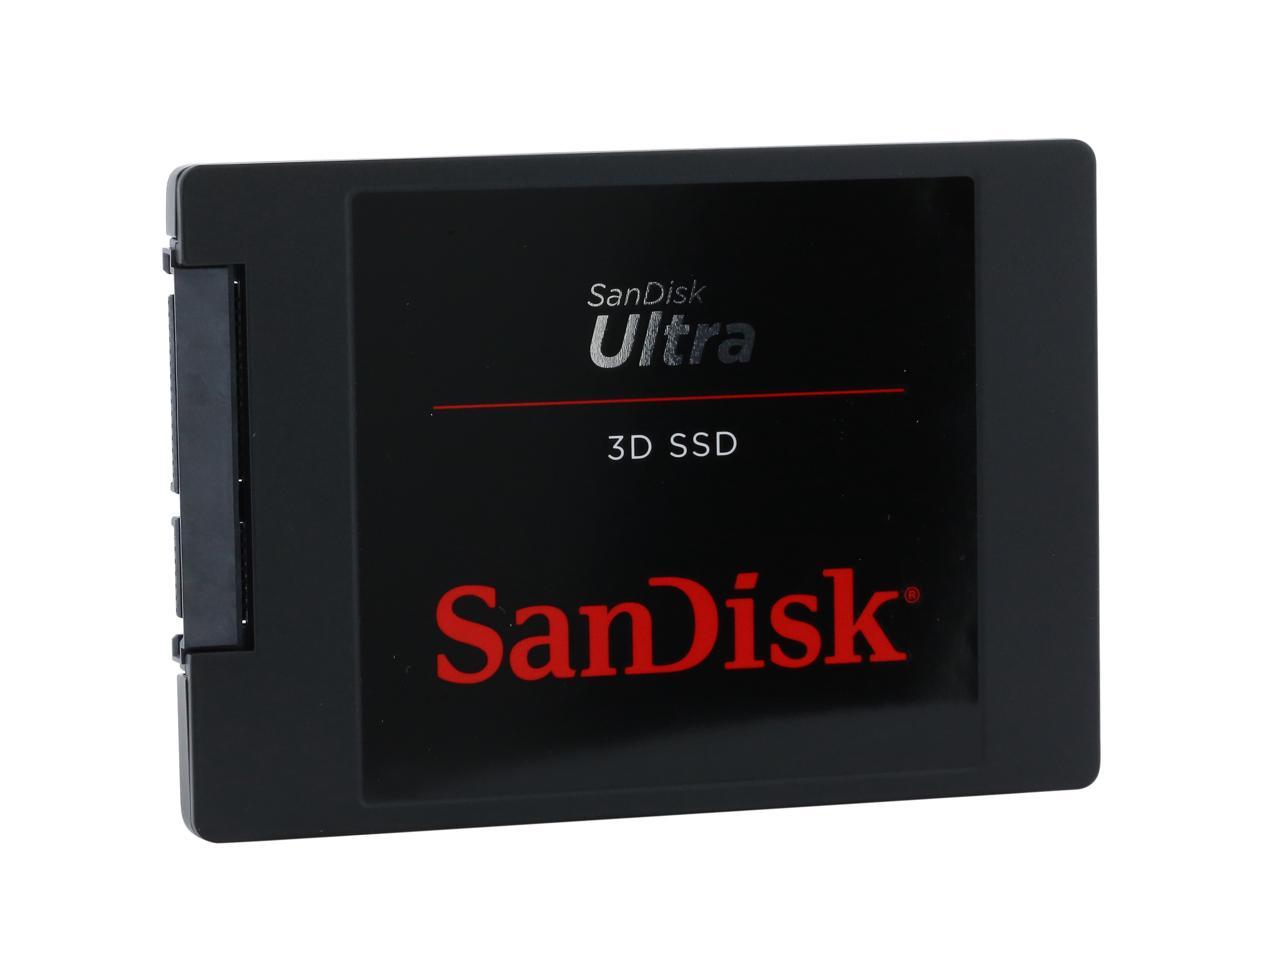 Sandisk Ultra 3d 2 5 1tb Sata Iii 3d Nand Internal Solid State Drive Ssd Sdssdh3 1t00 G25